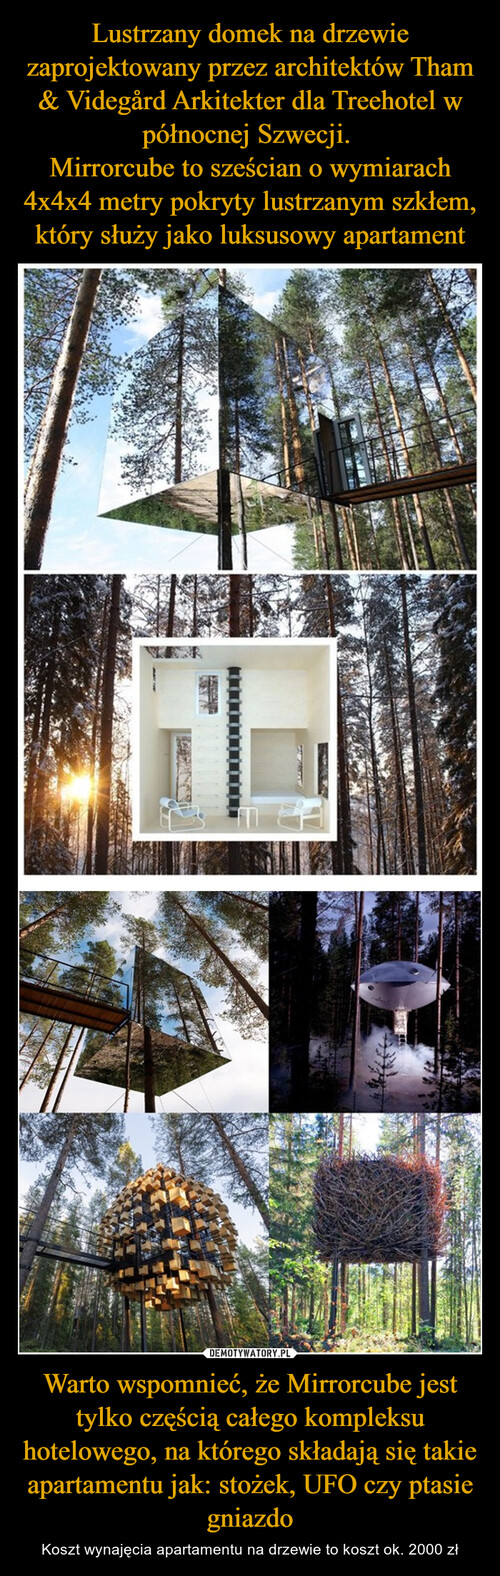 Lustrzany domek na drzewie zaprojektowany przez architektów Tham & Videgård Arkitekter dla Treehotel w północnej Szwecji. 
Mirrorcube to sześcian o wymiarach 4x4x4 metry pokryty lustrzanym szkłem, który służy jako luksusowy apartament Warto wspomnieć, że Mirrorcube jest tylko częścią całego kompleksu hotelowego, na którego składają się takie apartamentu jak: stożek, UFO czy ptasie gniazdo